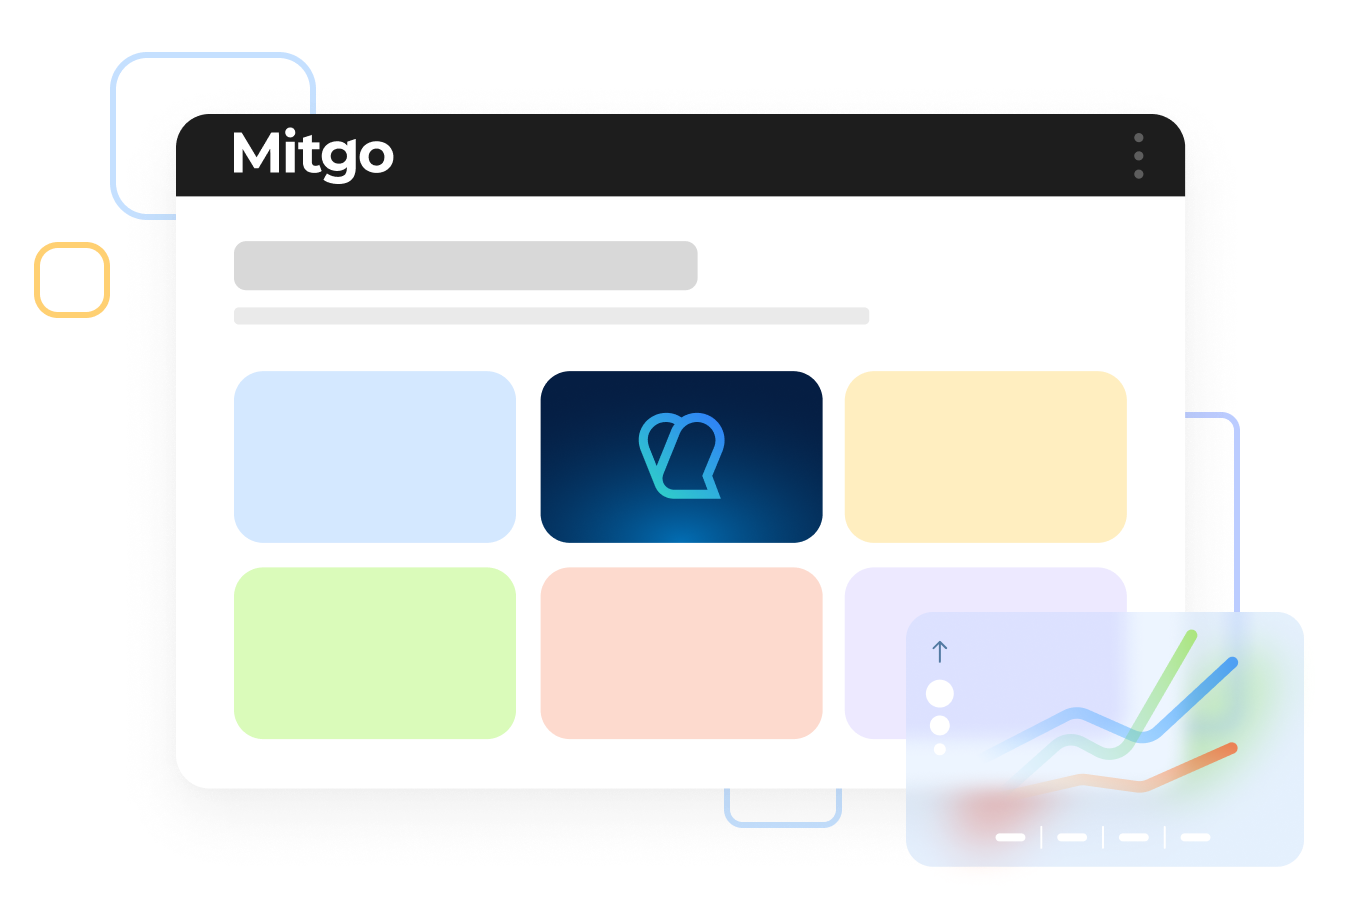 Part of Mitgo’s ecosystem